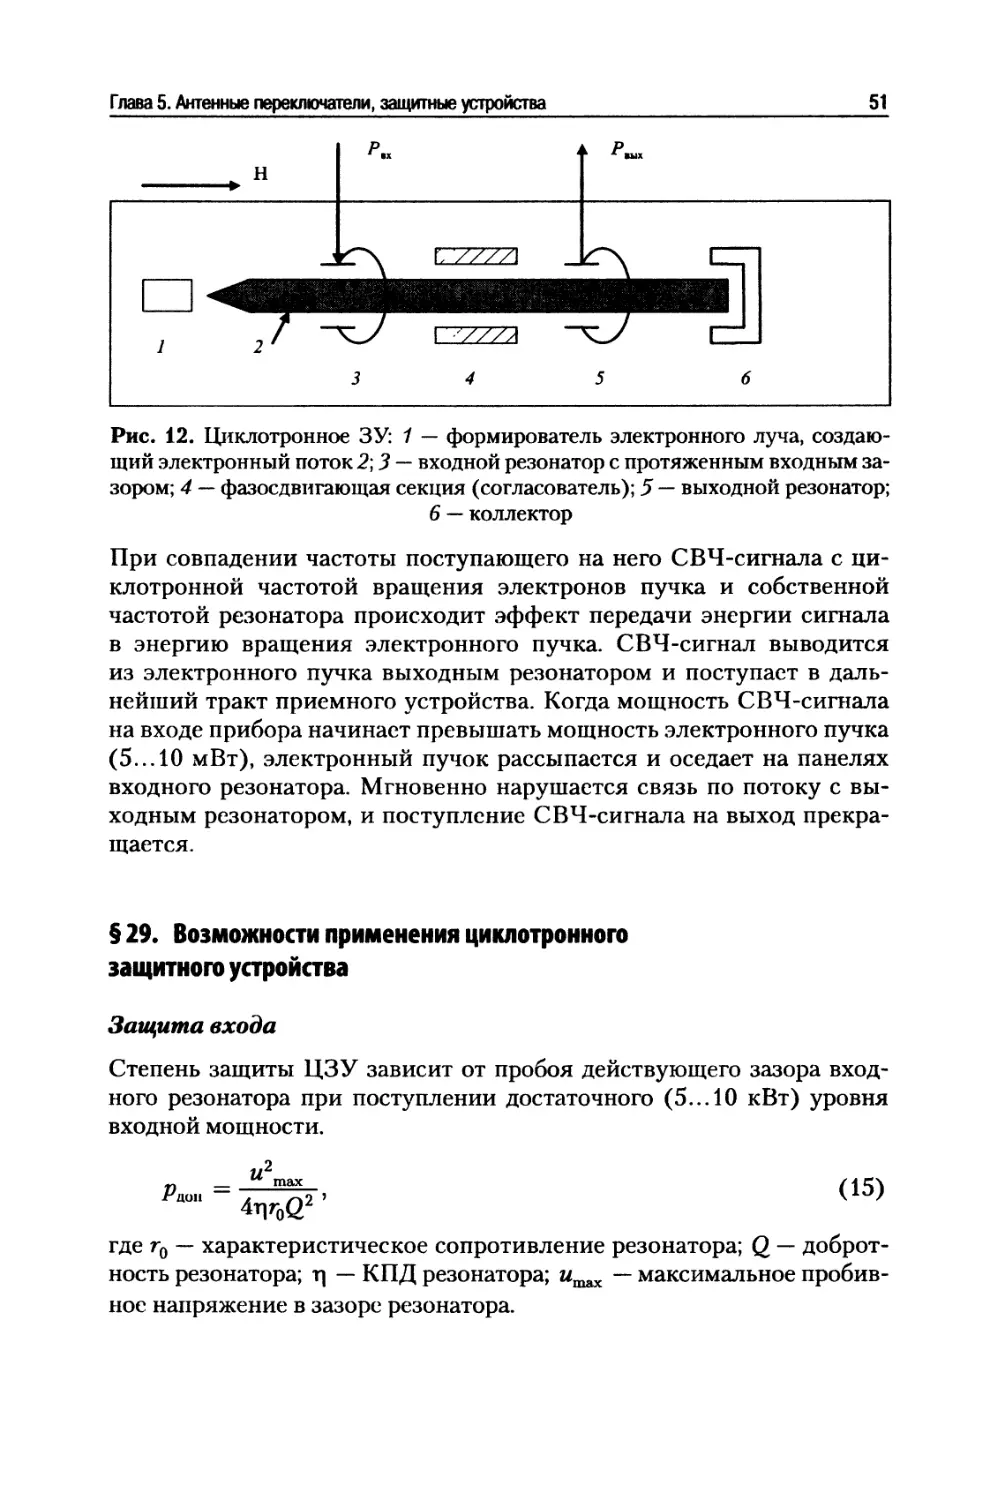 § 29. Возможности применения циклотронного защитного устройства